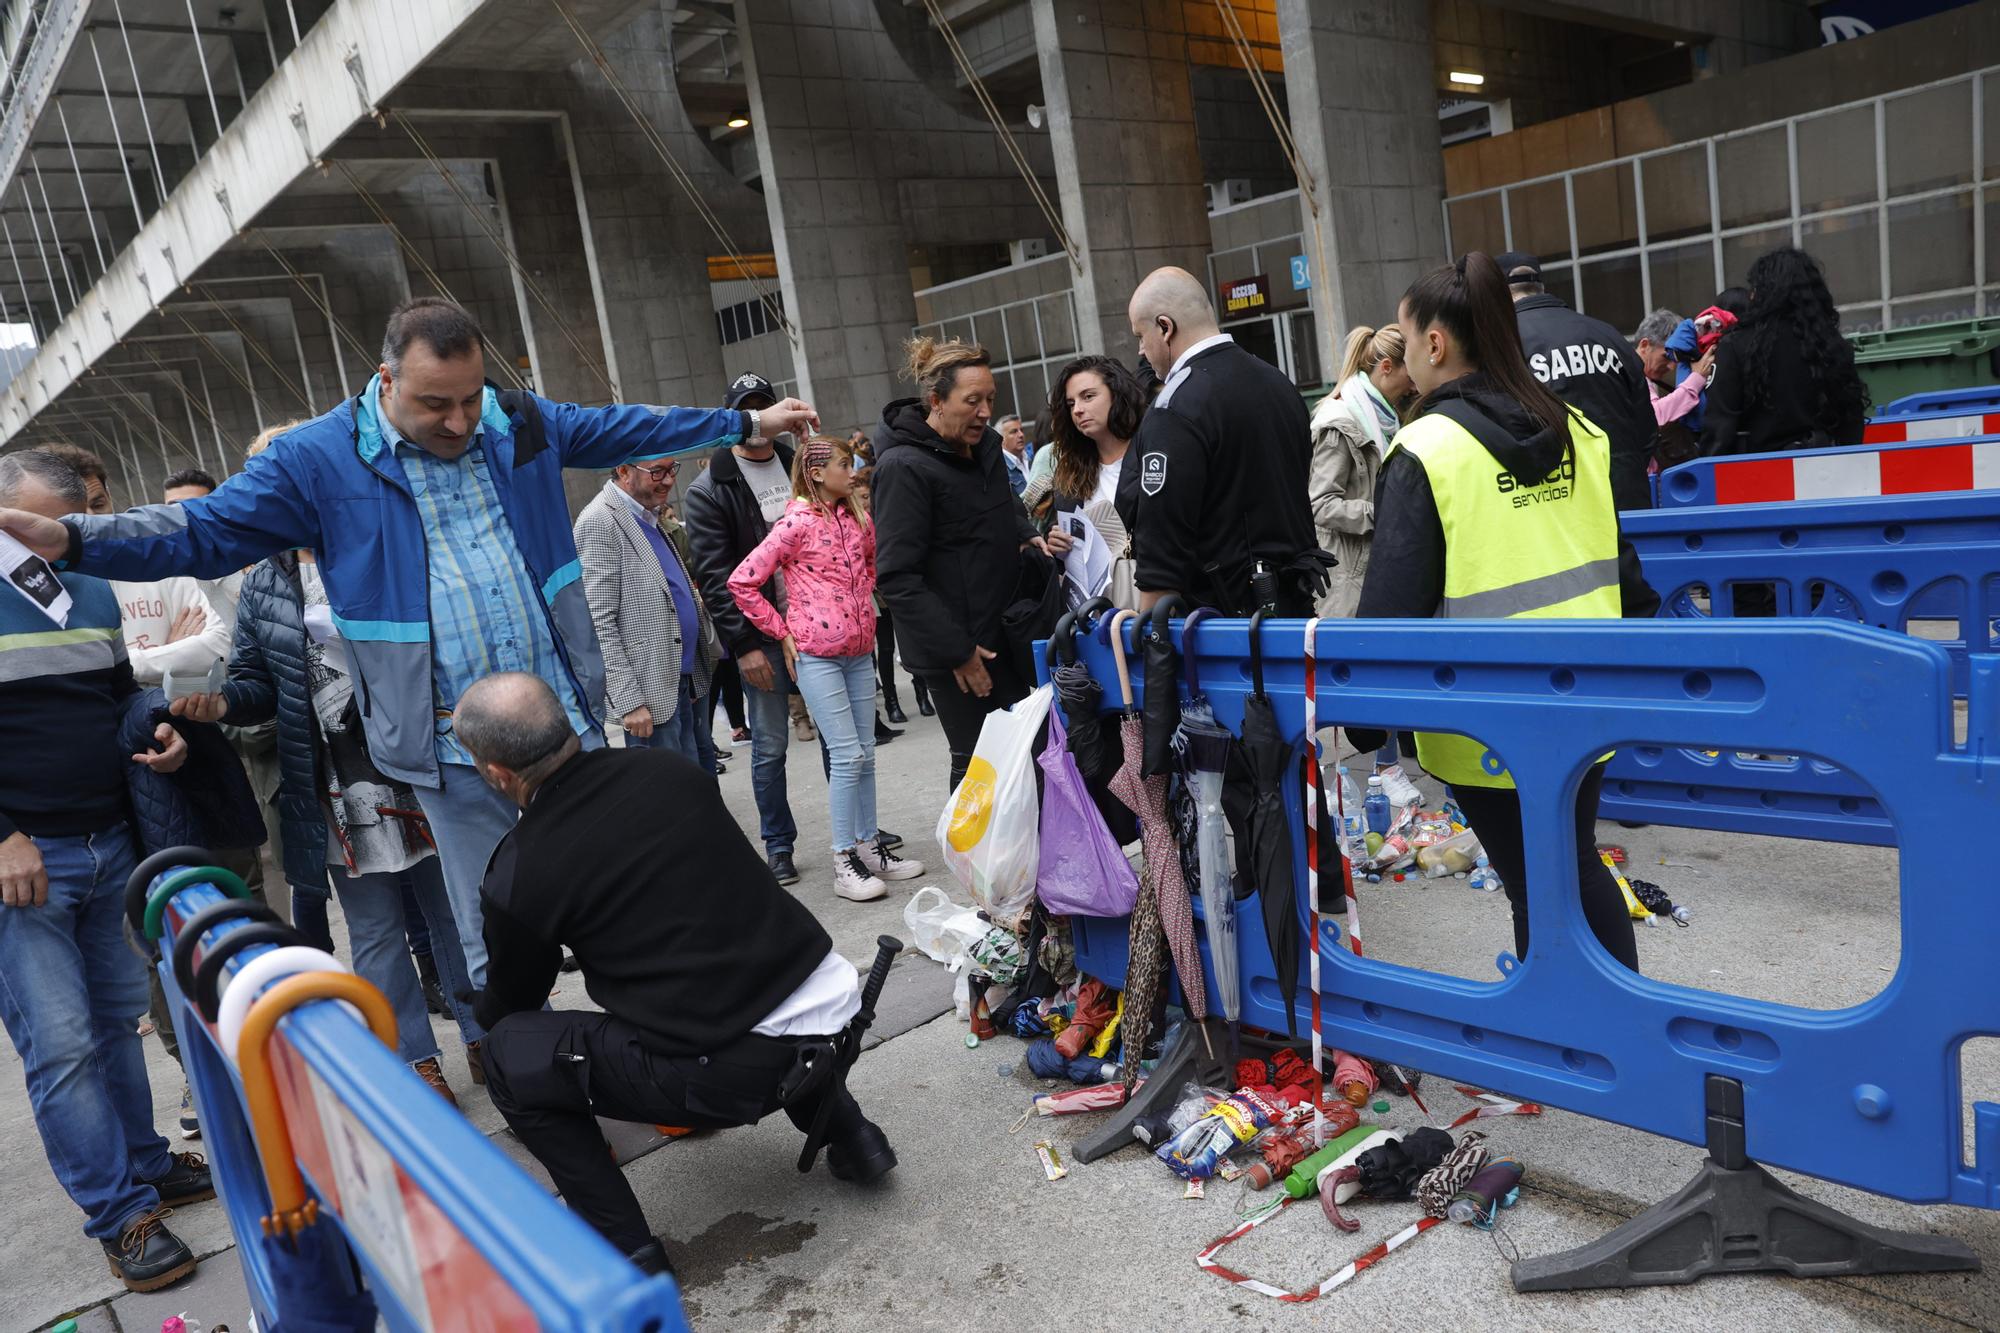 La espera "valió la pena": Marc Anthony parte caderas en Oviedo a ritmo de salsa